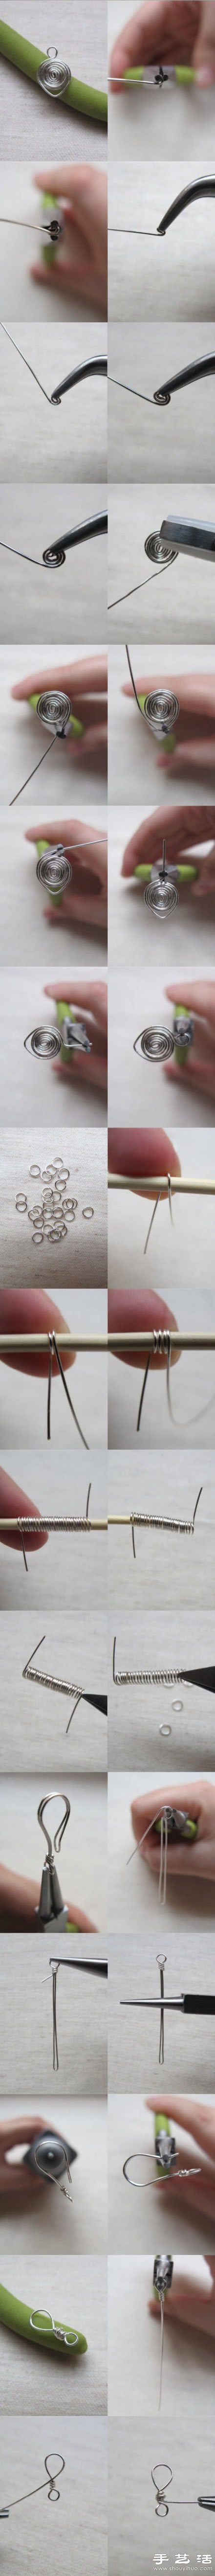 金属丝DIY制作小清新耳饰的方法教程